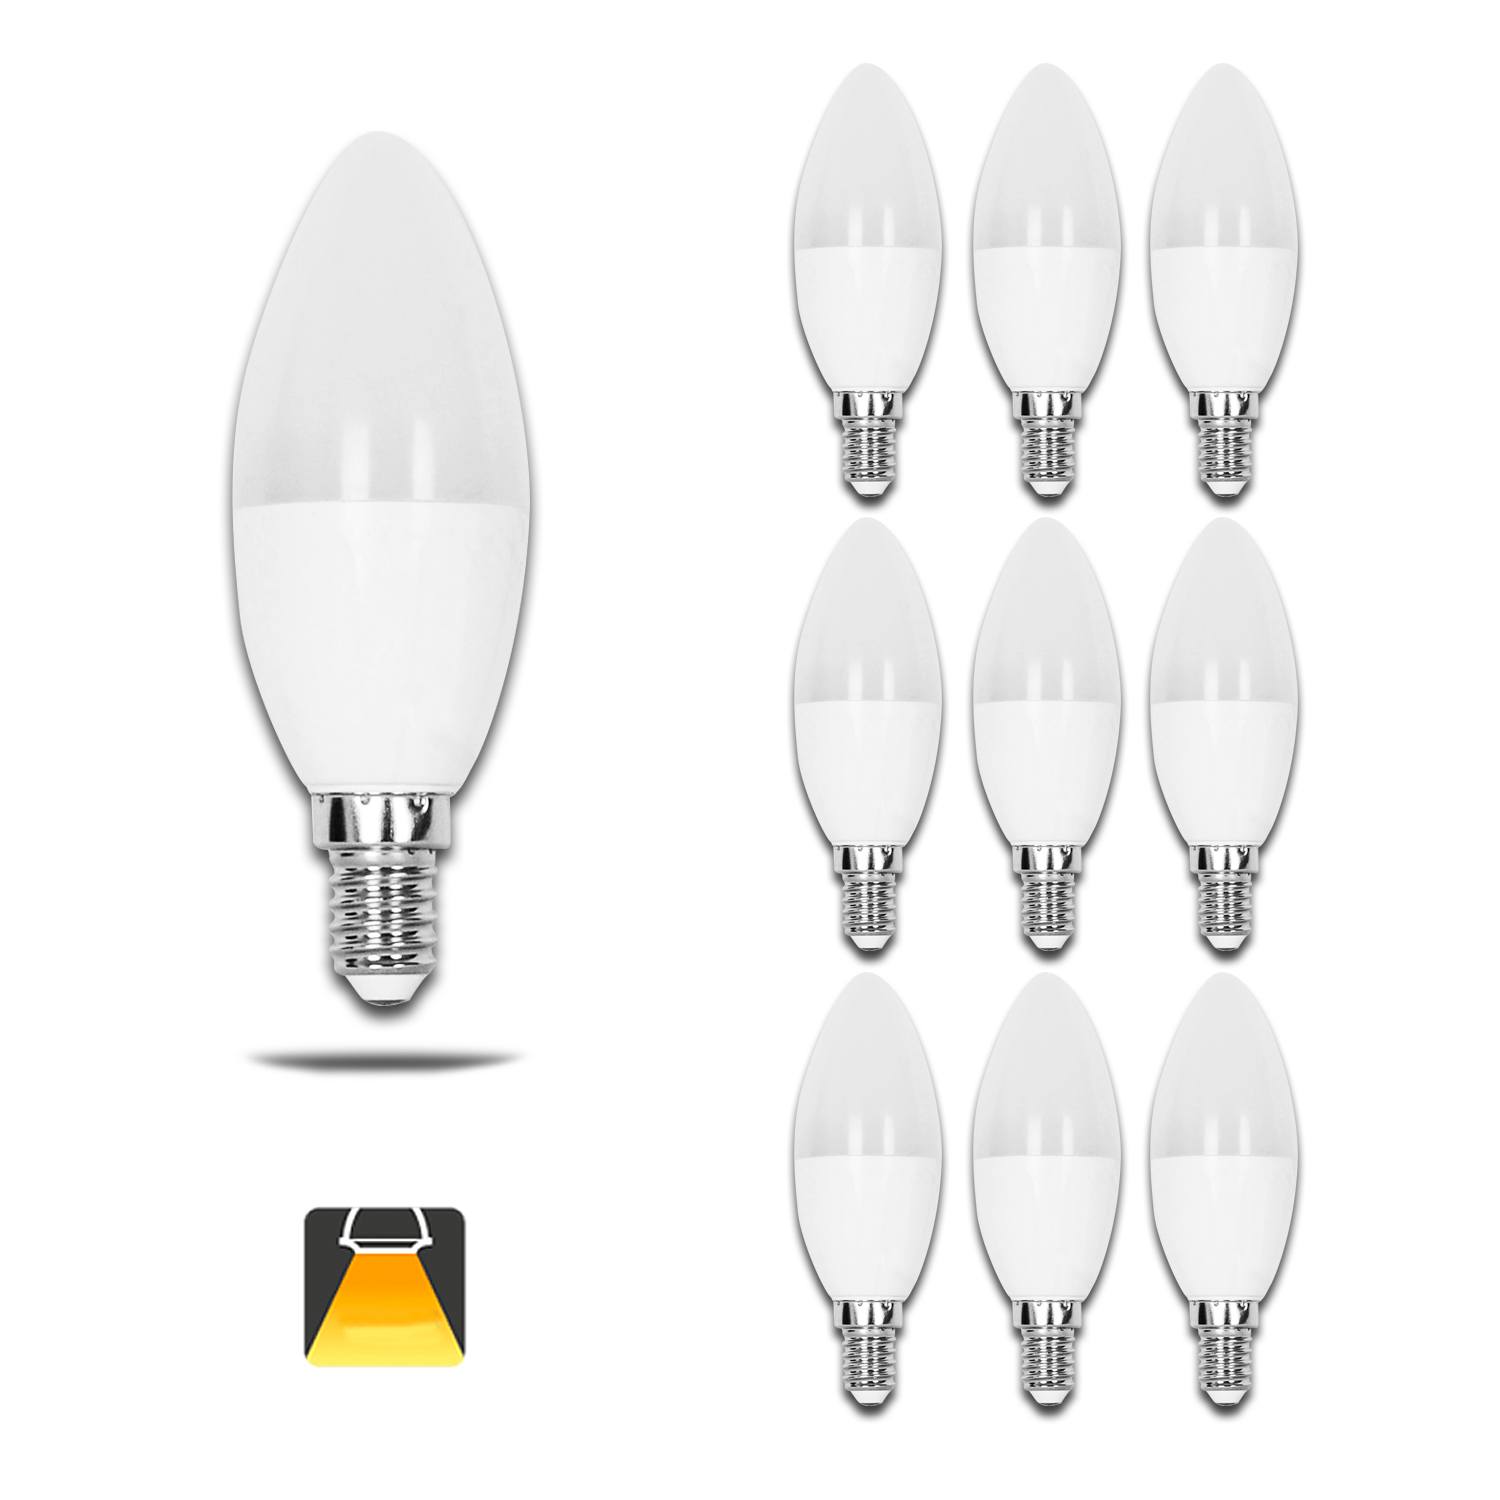 Aigostar - Confezione da 10 Lampadine LED C37 vela, 3W, Attacco Piccolo E14, 225 lumen, Luce Calda 3000K [Classe di efficienza energetica A+]